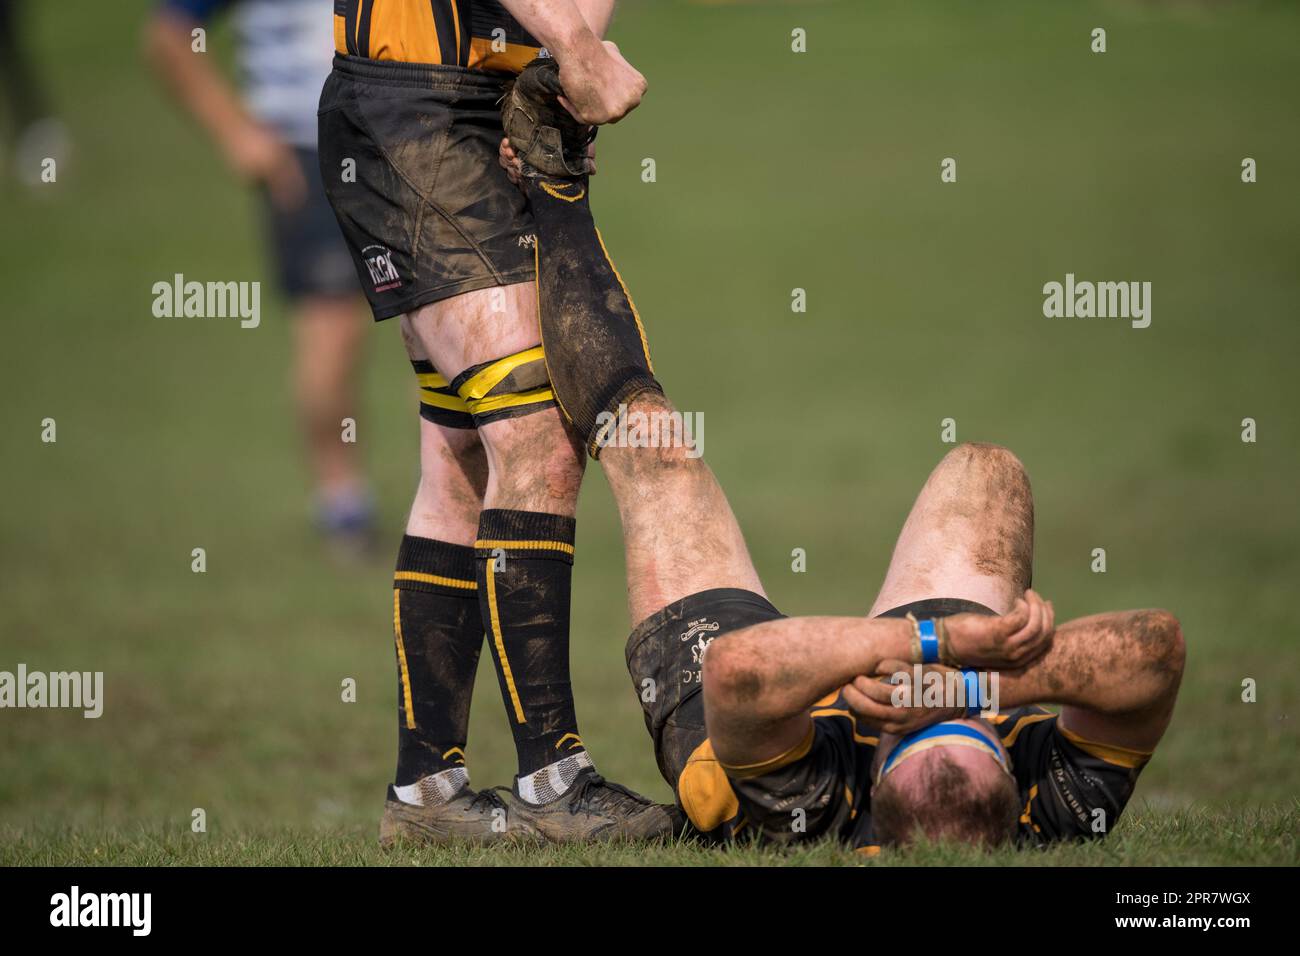 Englische Männer Amateur-Rugby Union-Spieler, die in einem Ligaspiel spielen, erhalten Behandlung wegen Beinkrämpfen. Stockfoto